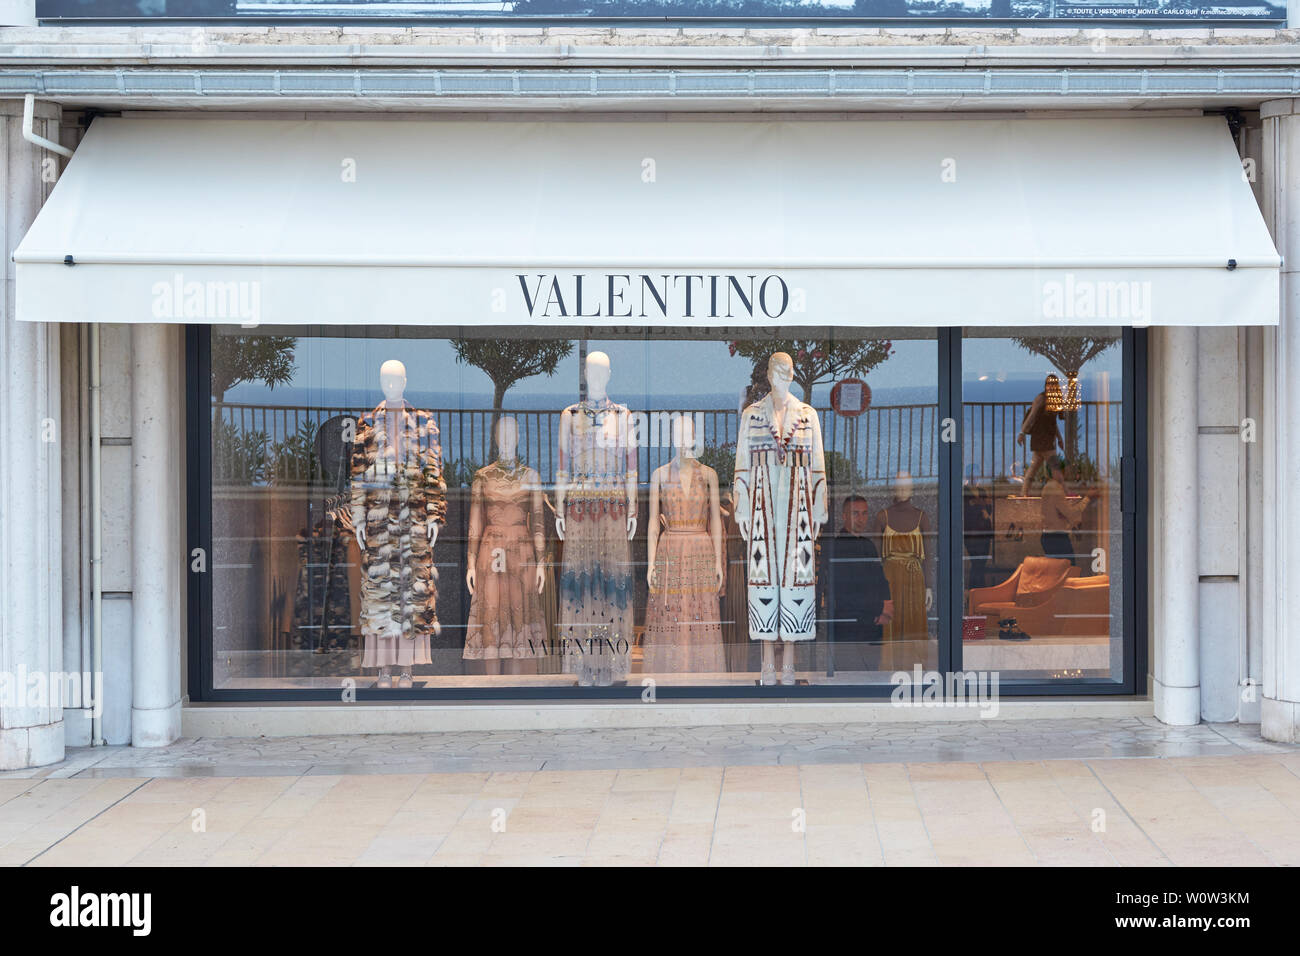 MONTE CARLO, MONACO - AUGUST 19, 2016: Valentino fashion luxury store ...